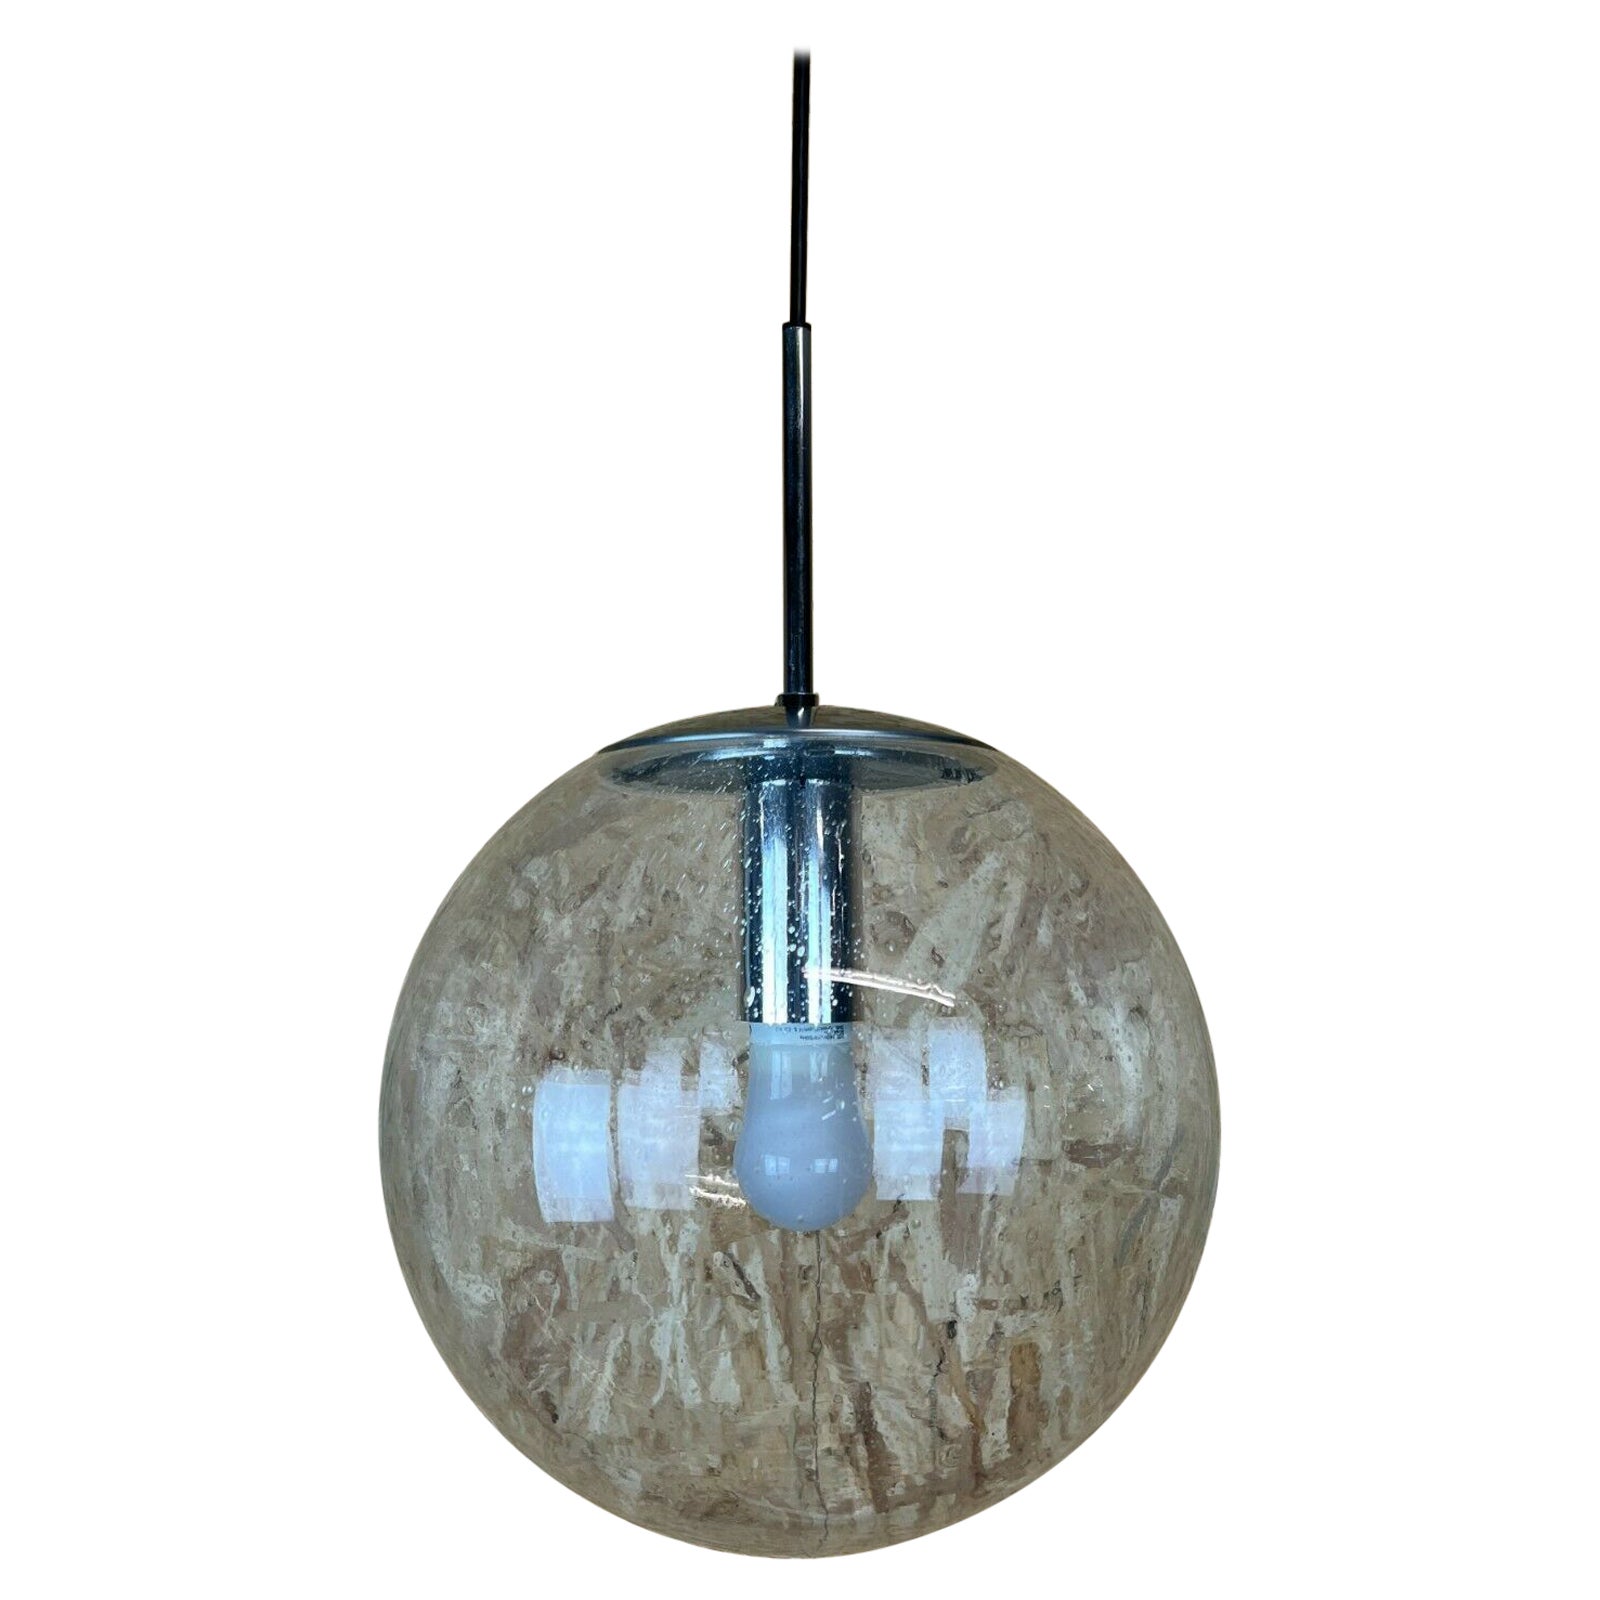 XL 60s 70s Lamp Light Ceiling Lamp Limburg Spherical Lamp Ball Design For Sale